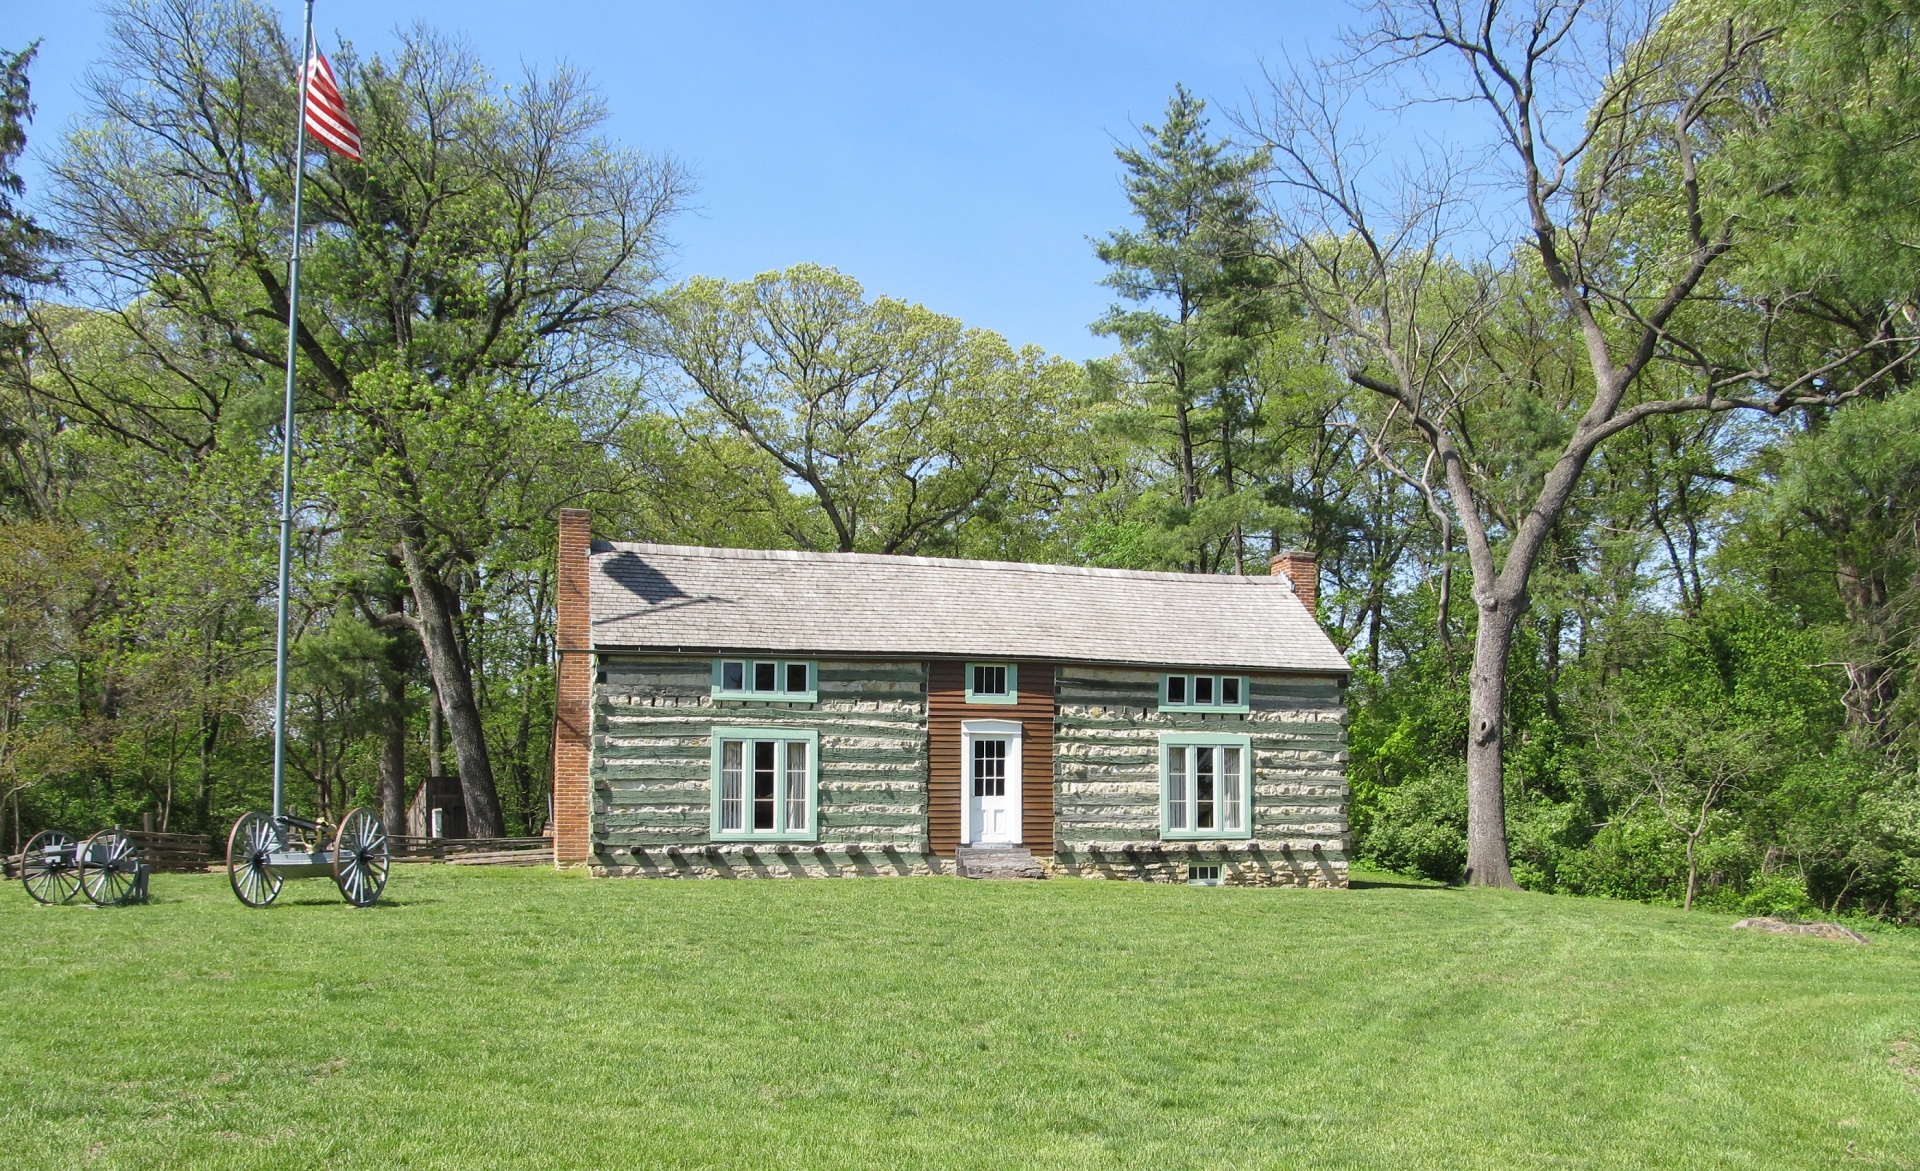 Ulysses S Grant Cabin